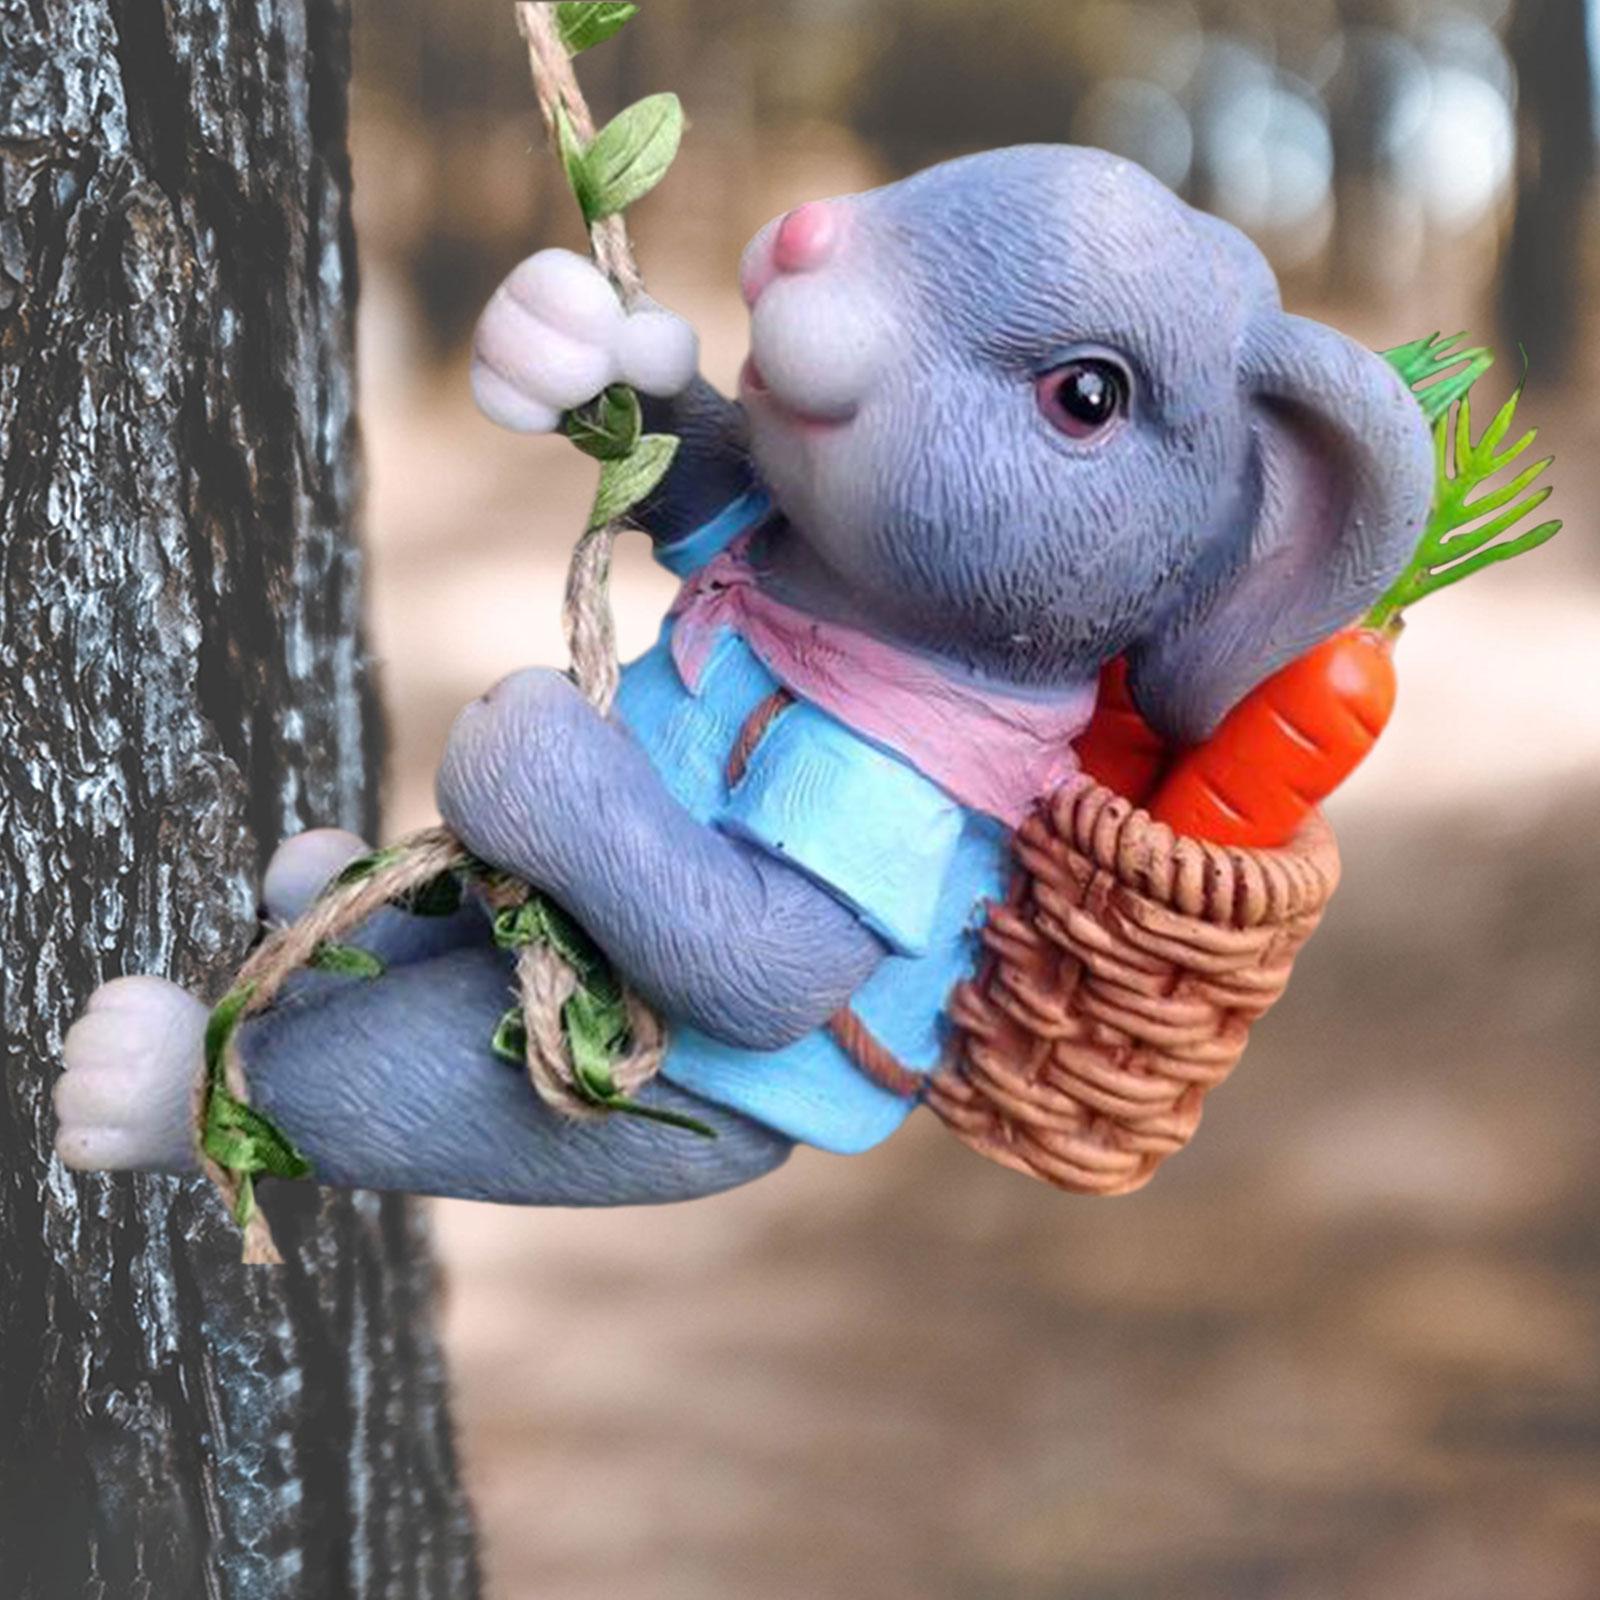 Hanging Rabbit Sculpture Premium Outdoor Garden Statue for Deck Patio